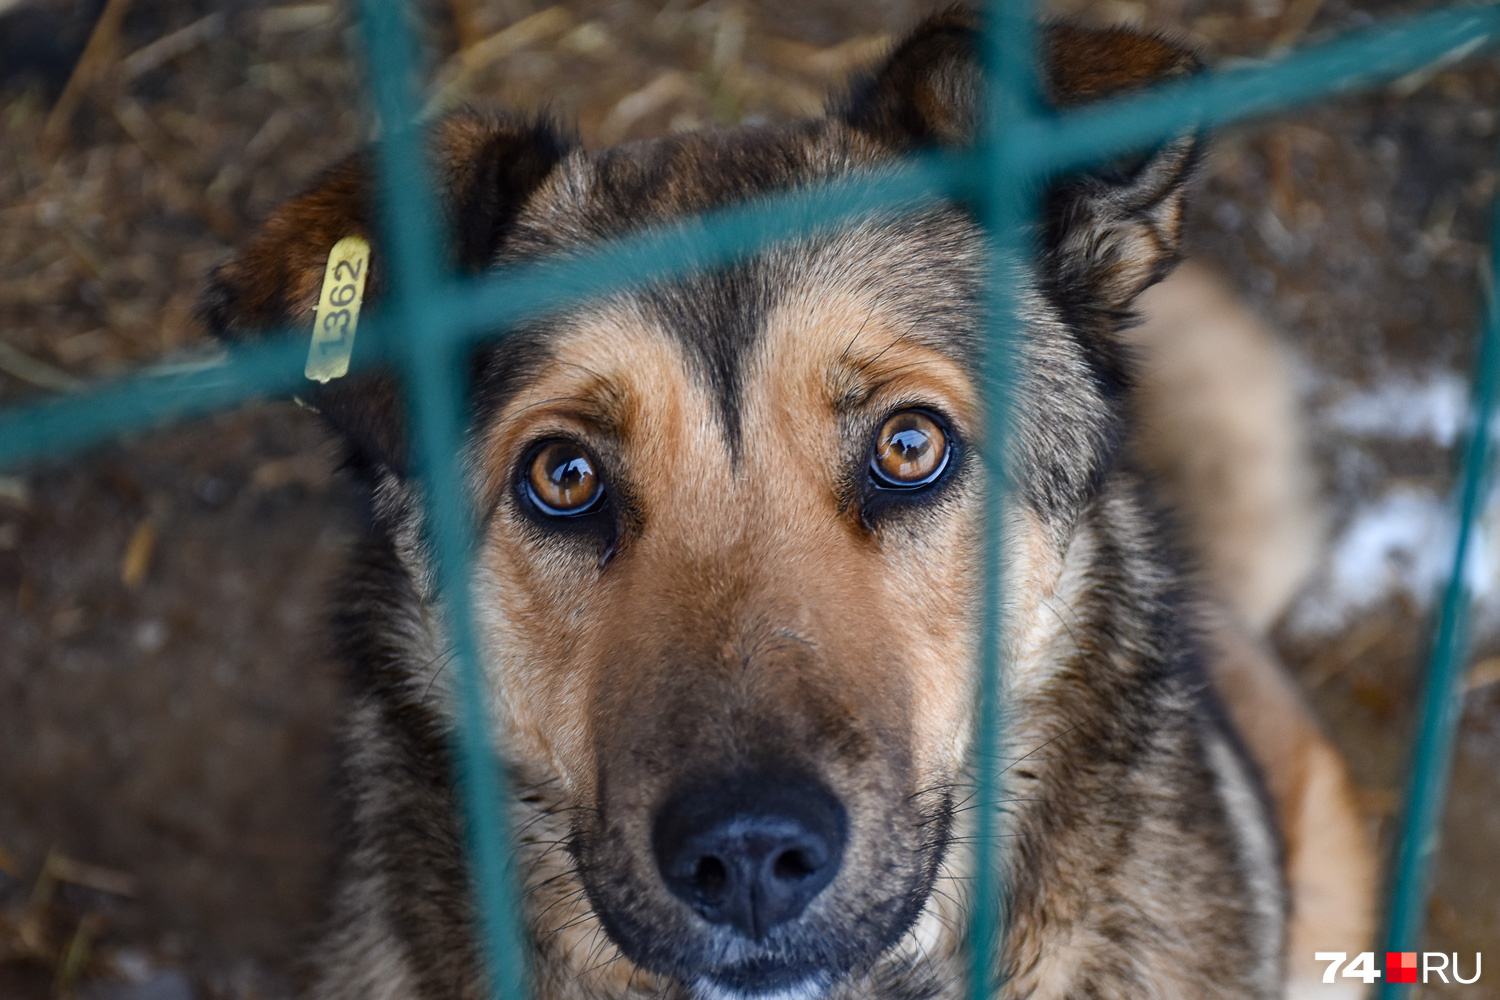 Бабезионосительство среди беспризорных собак в Москве: причины, последствия и меры предотвращения